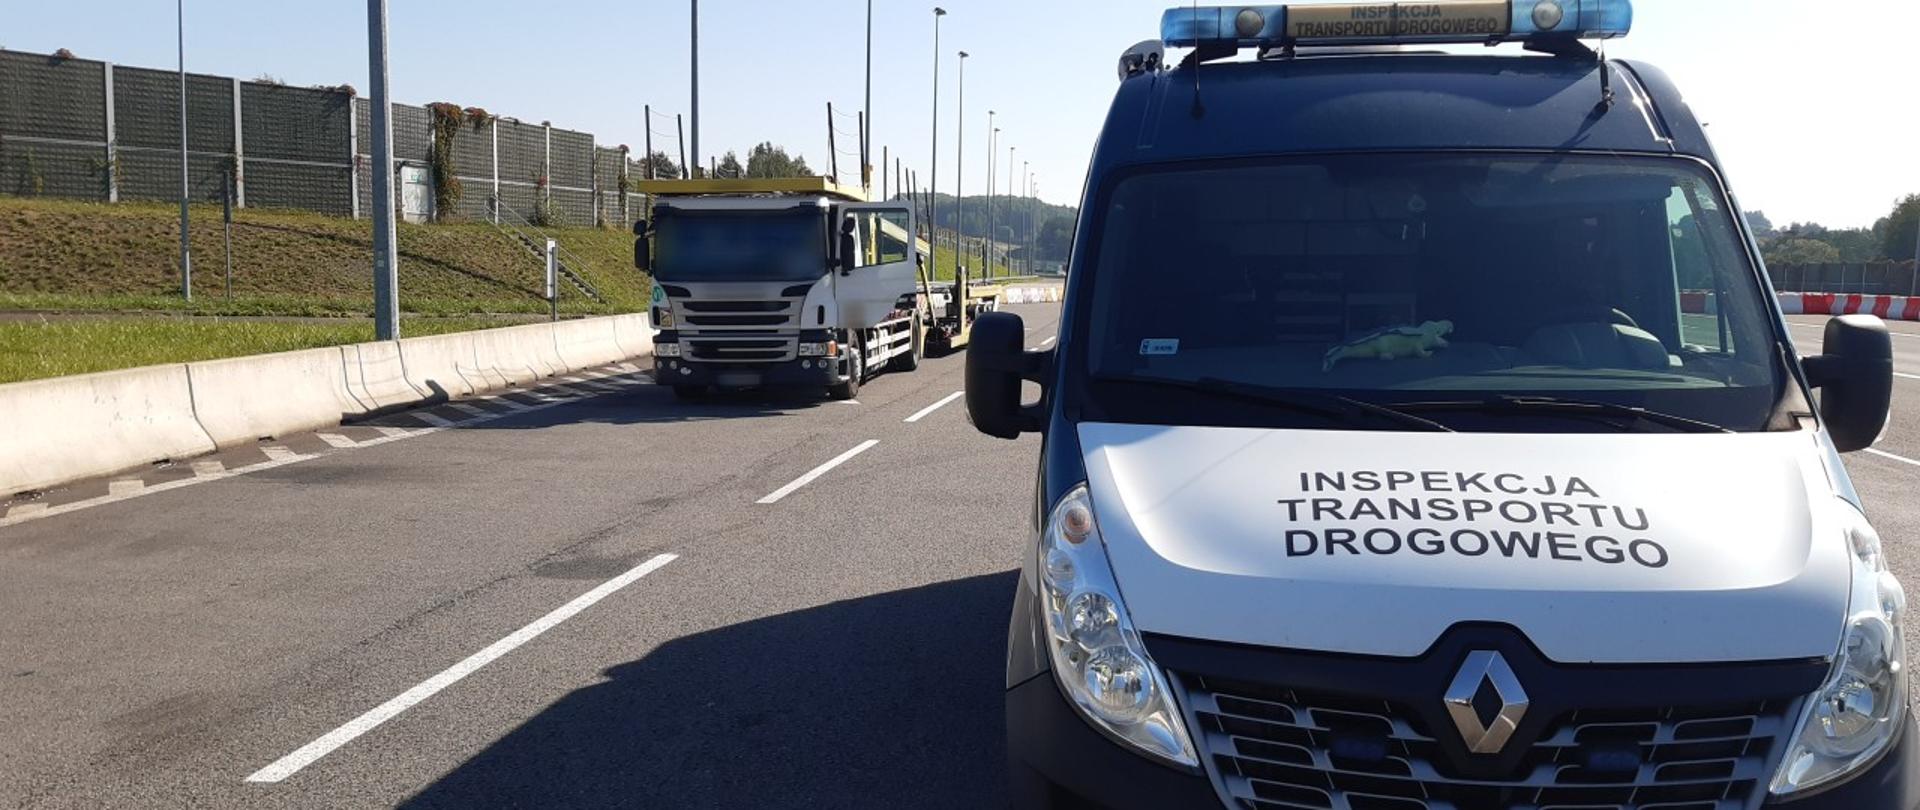 Miejsce zatrzymania do kontroli nietrzeźwego kierowcy ciężarówki przez patrol śląskiej Inspekcji Transportu Drogowego.